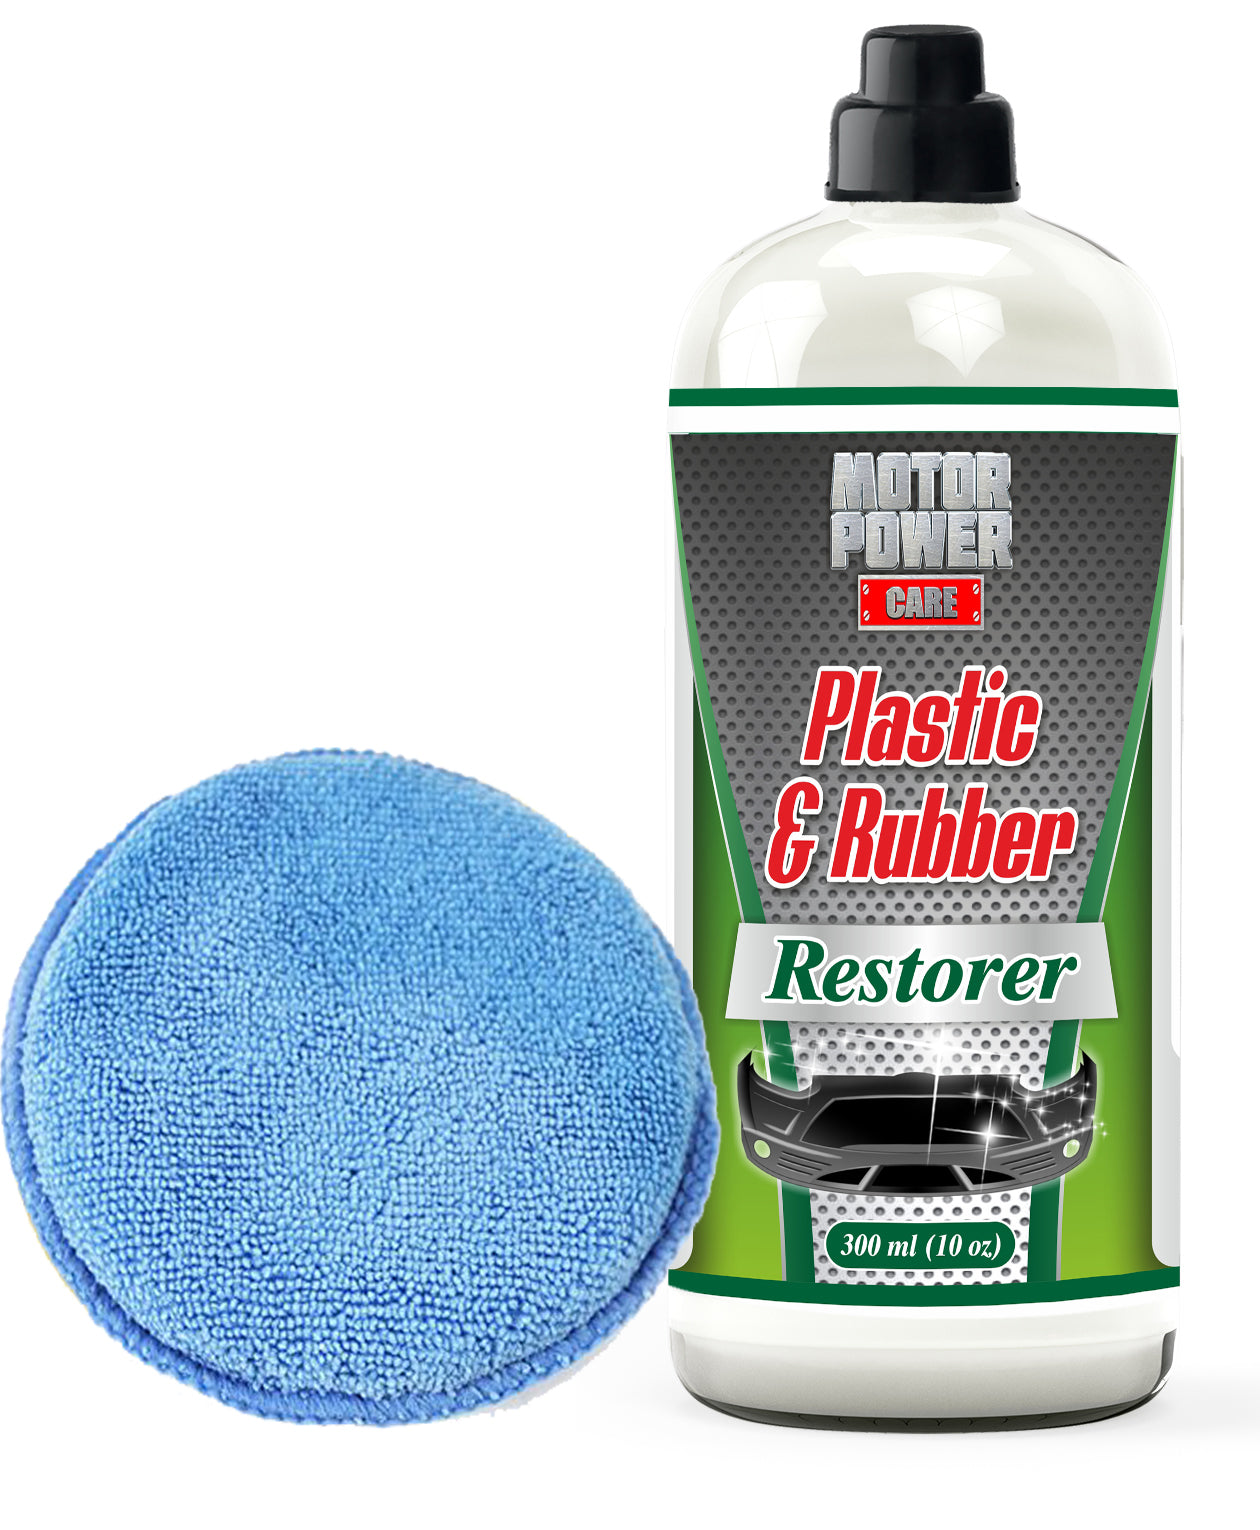  Restoring Plastic